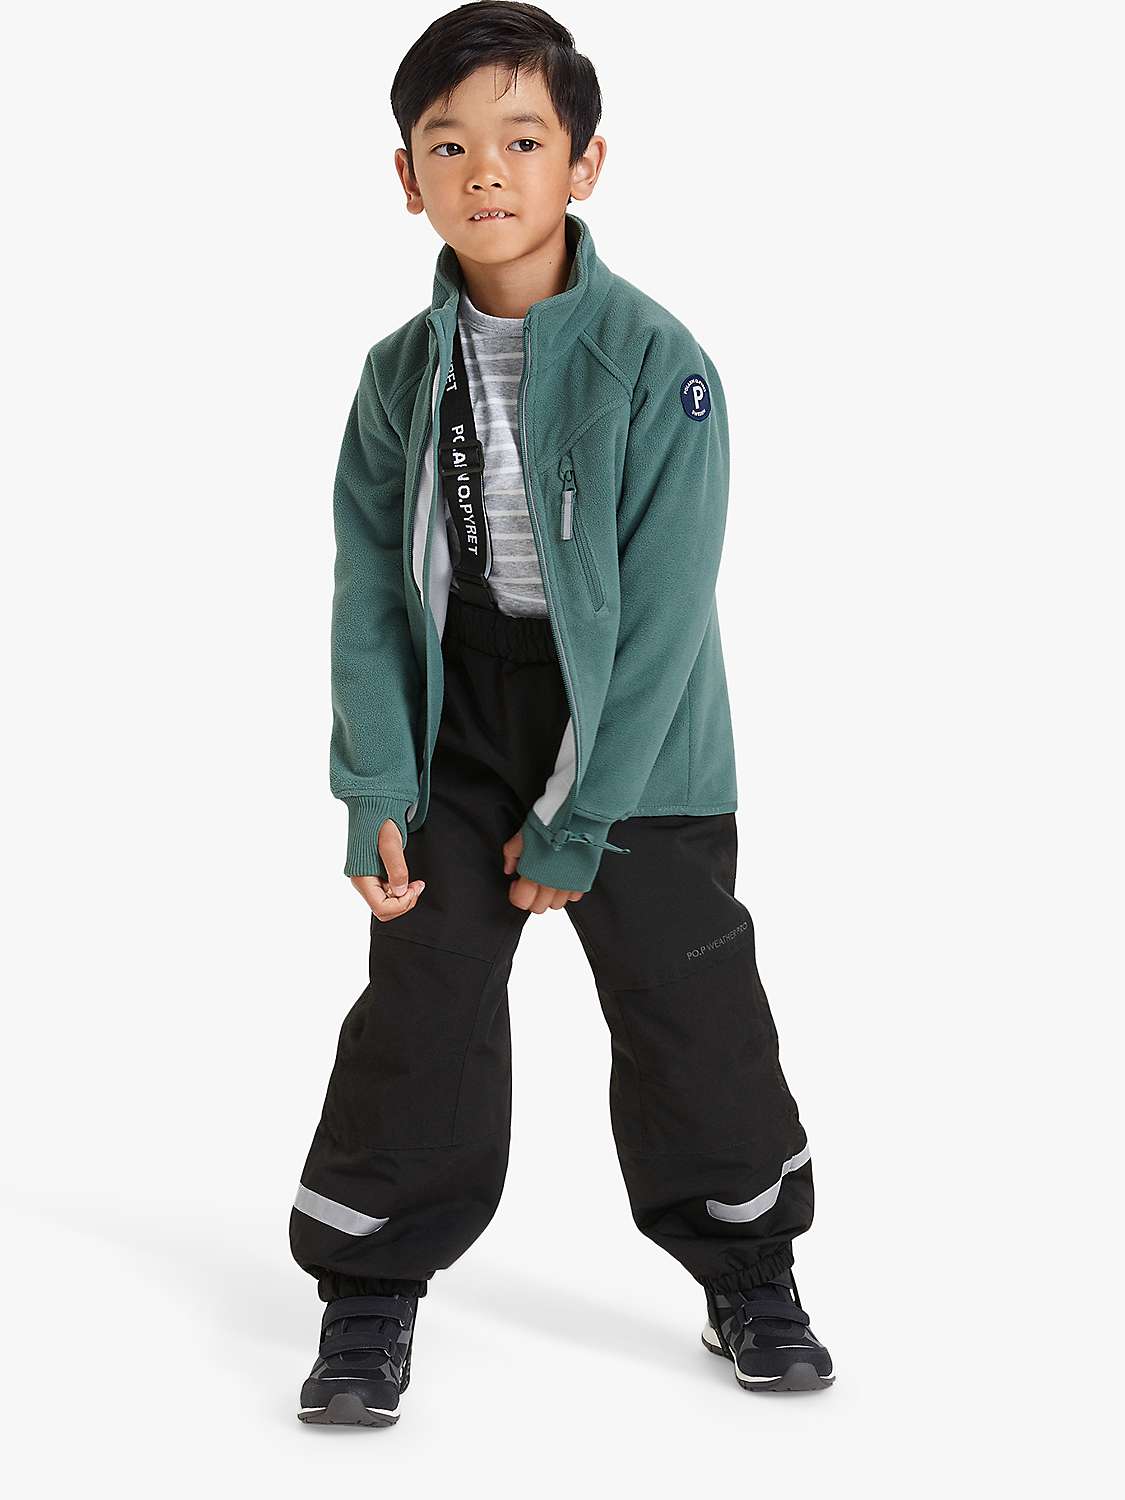 Buy Polarn O. Pyret Kids' Fleece Jacket Online at johnlewis.com